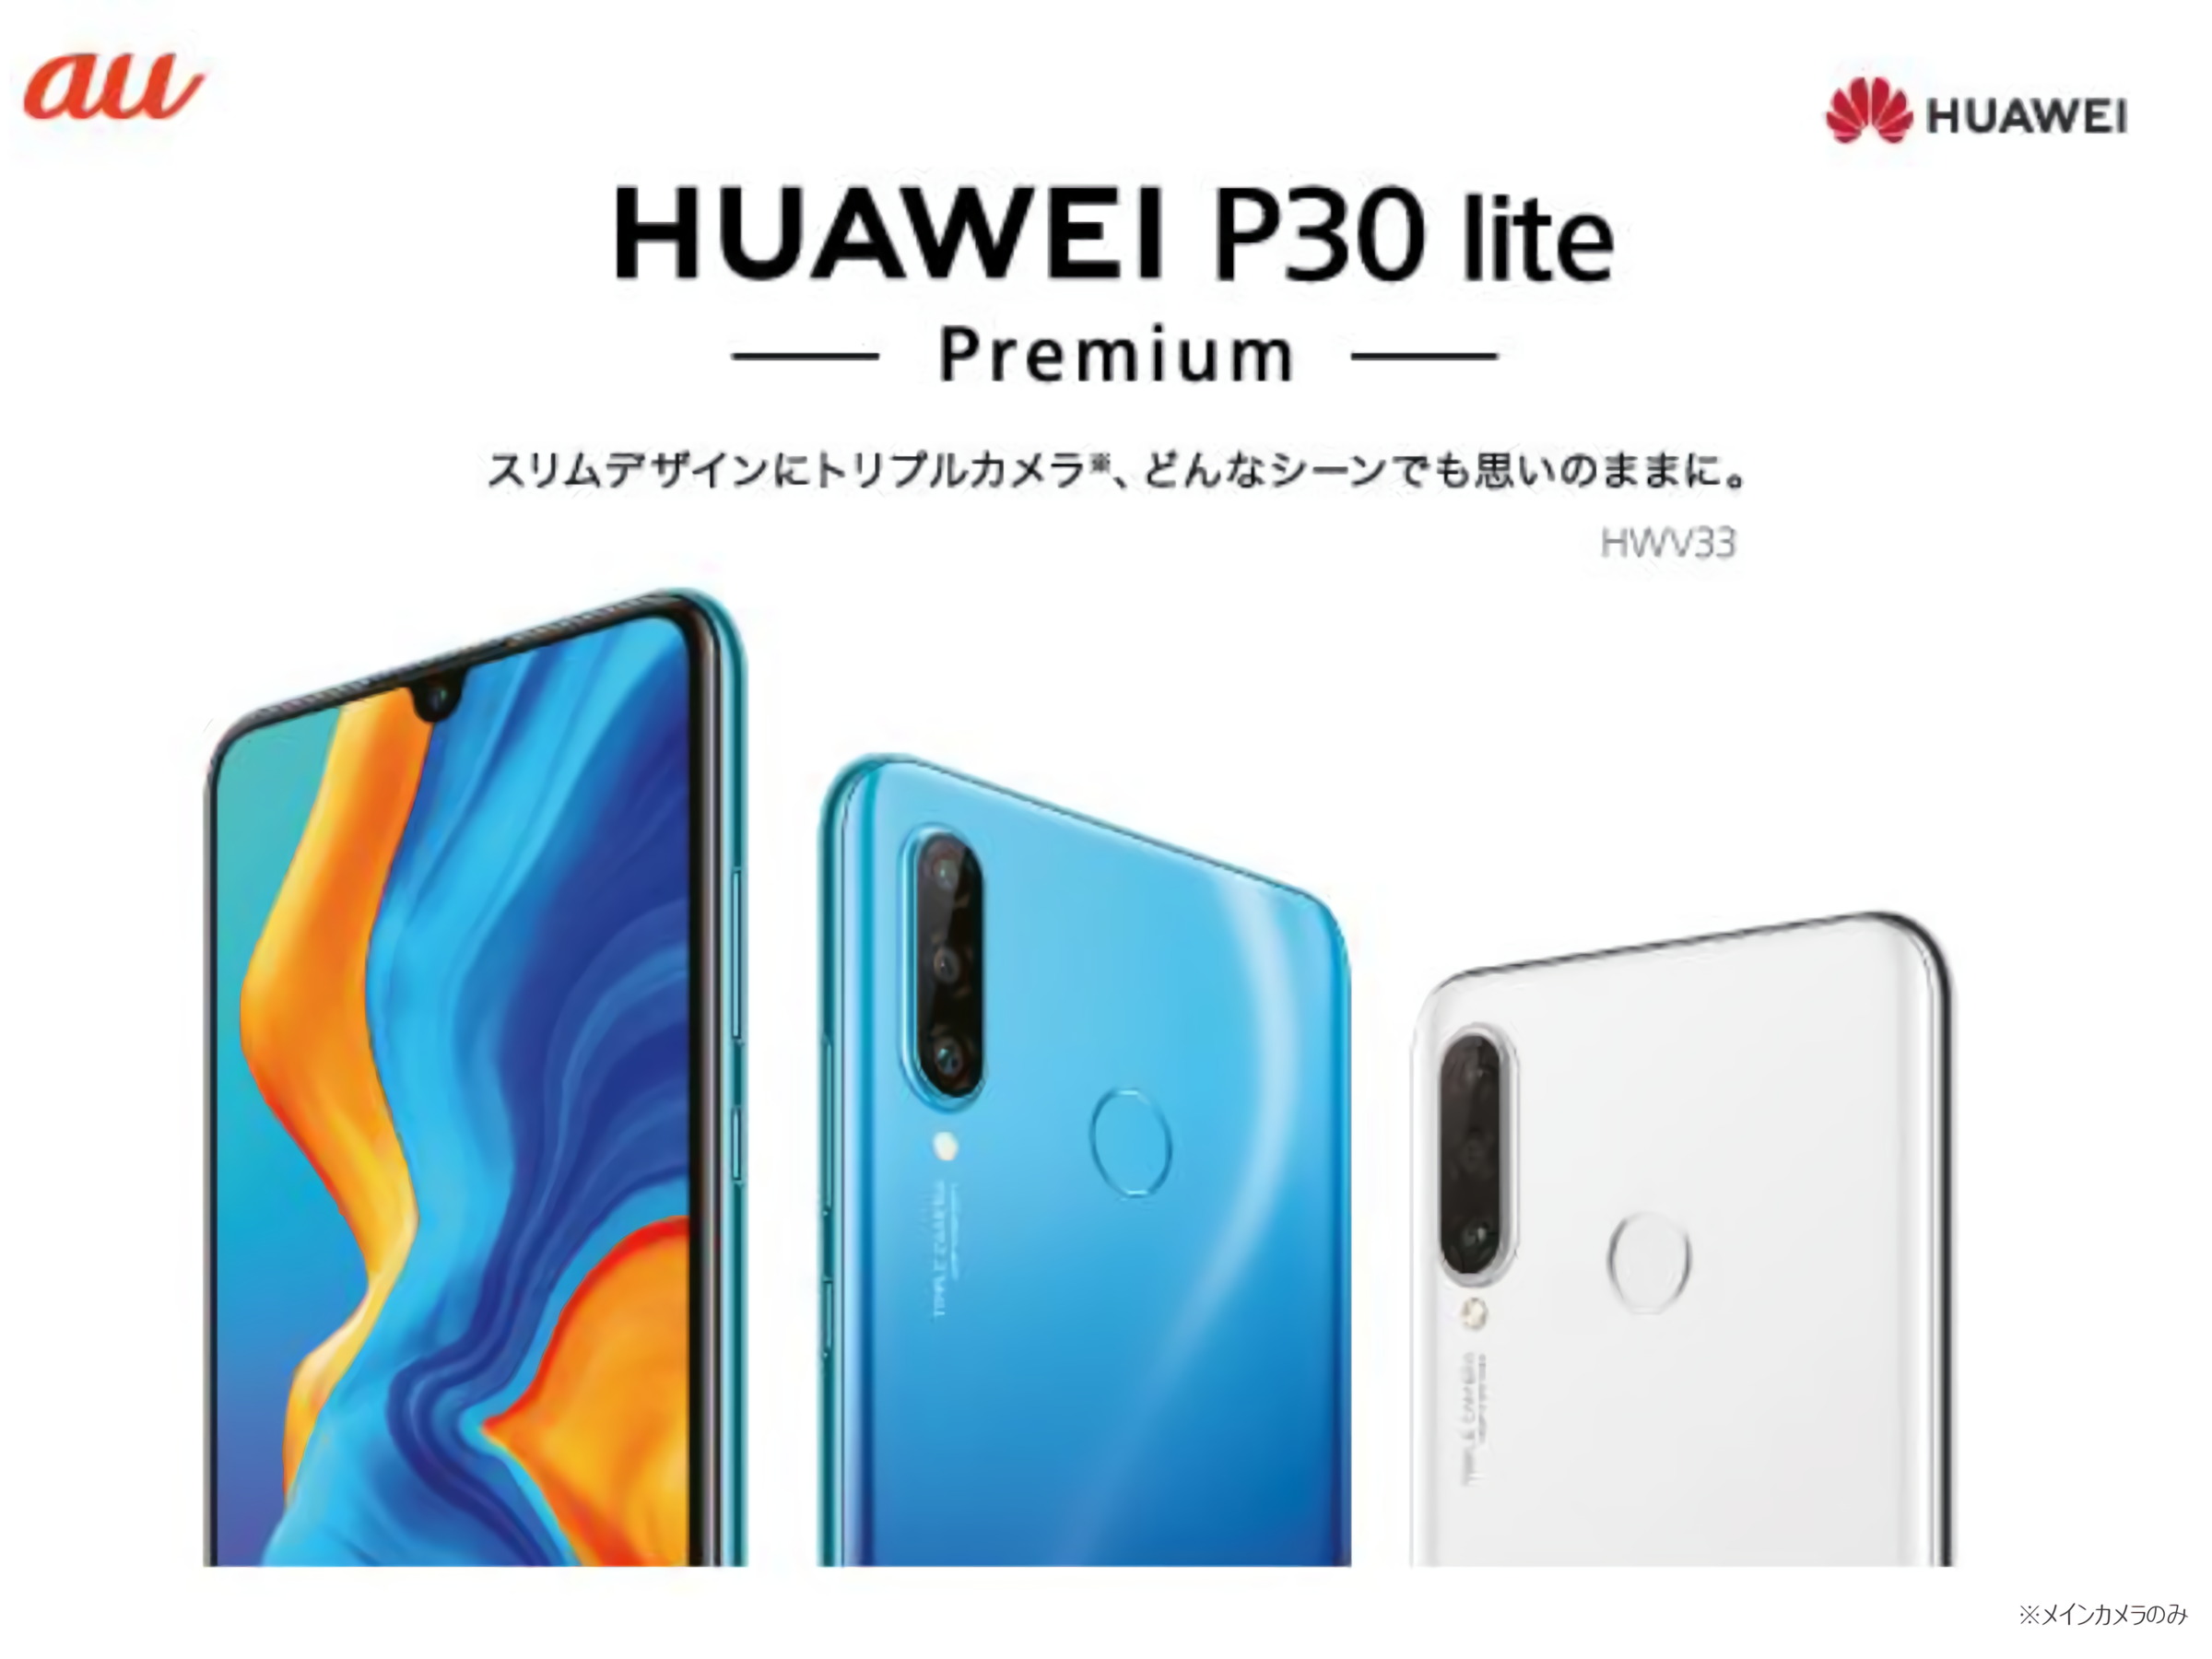 高いコストパフォーマンスを誇る大人気スマートフォンP liteシリーズ最新作『HUAWEI P30 lite Premium』 KDDI